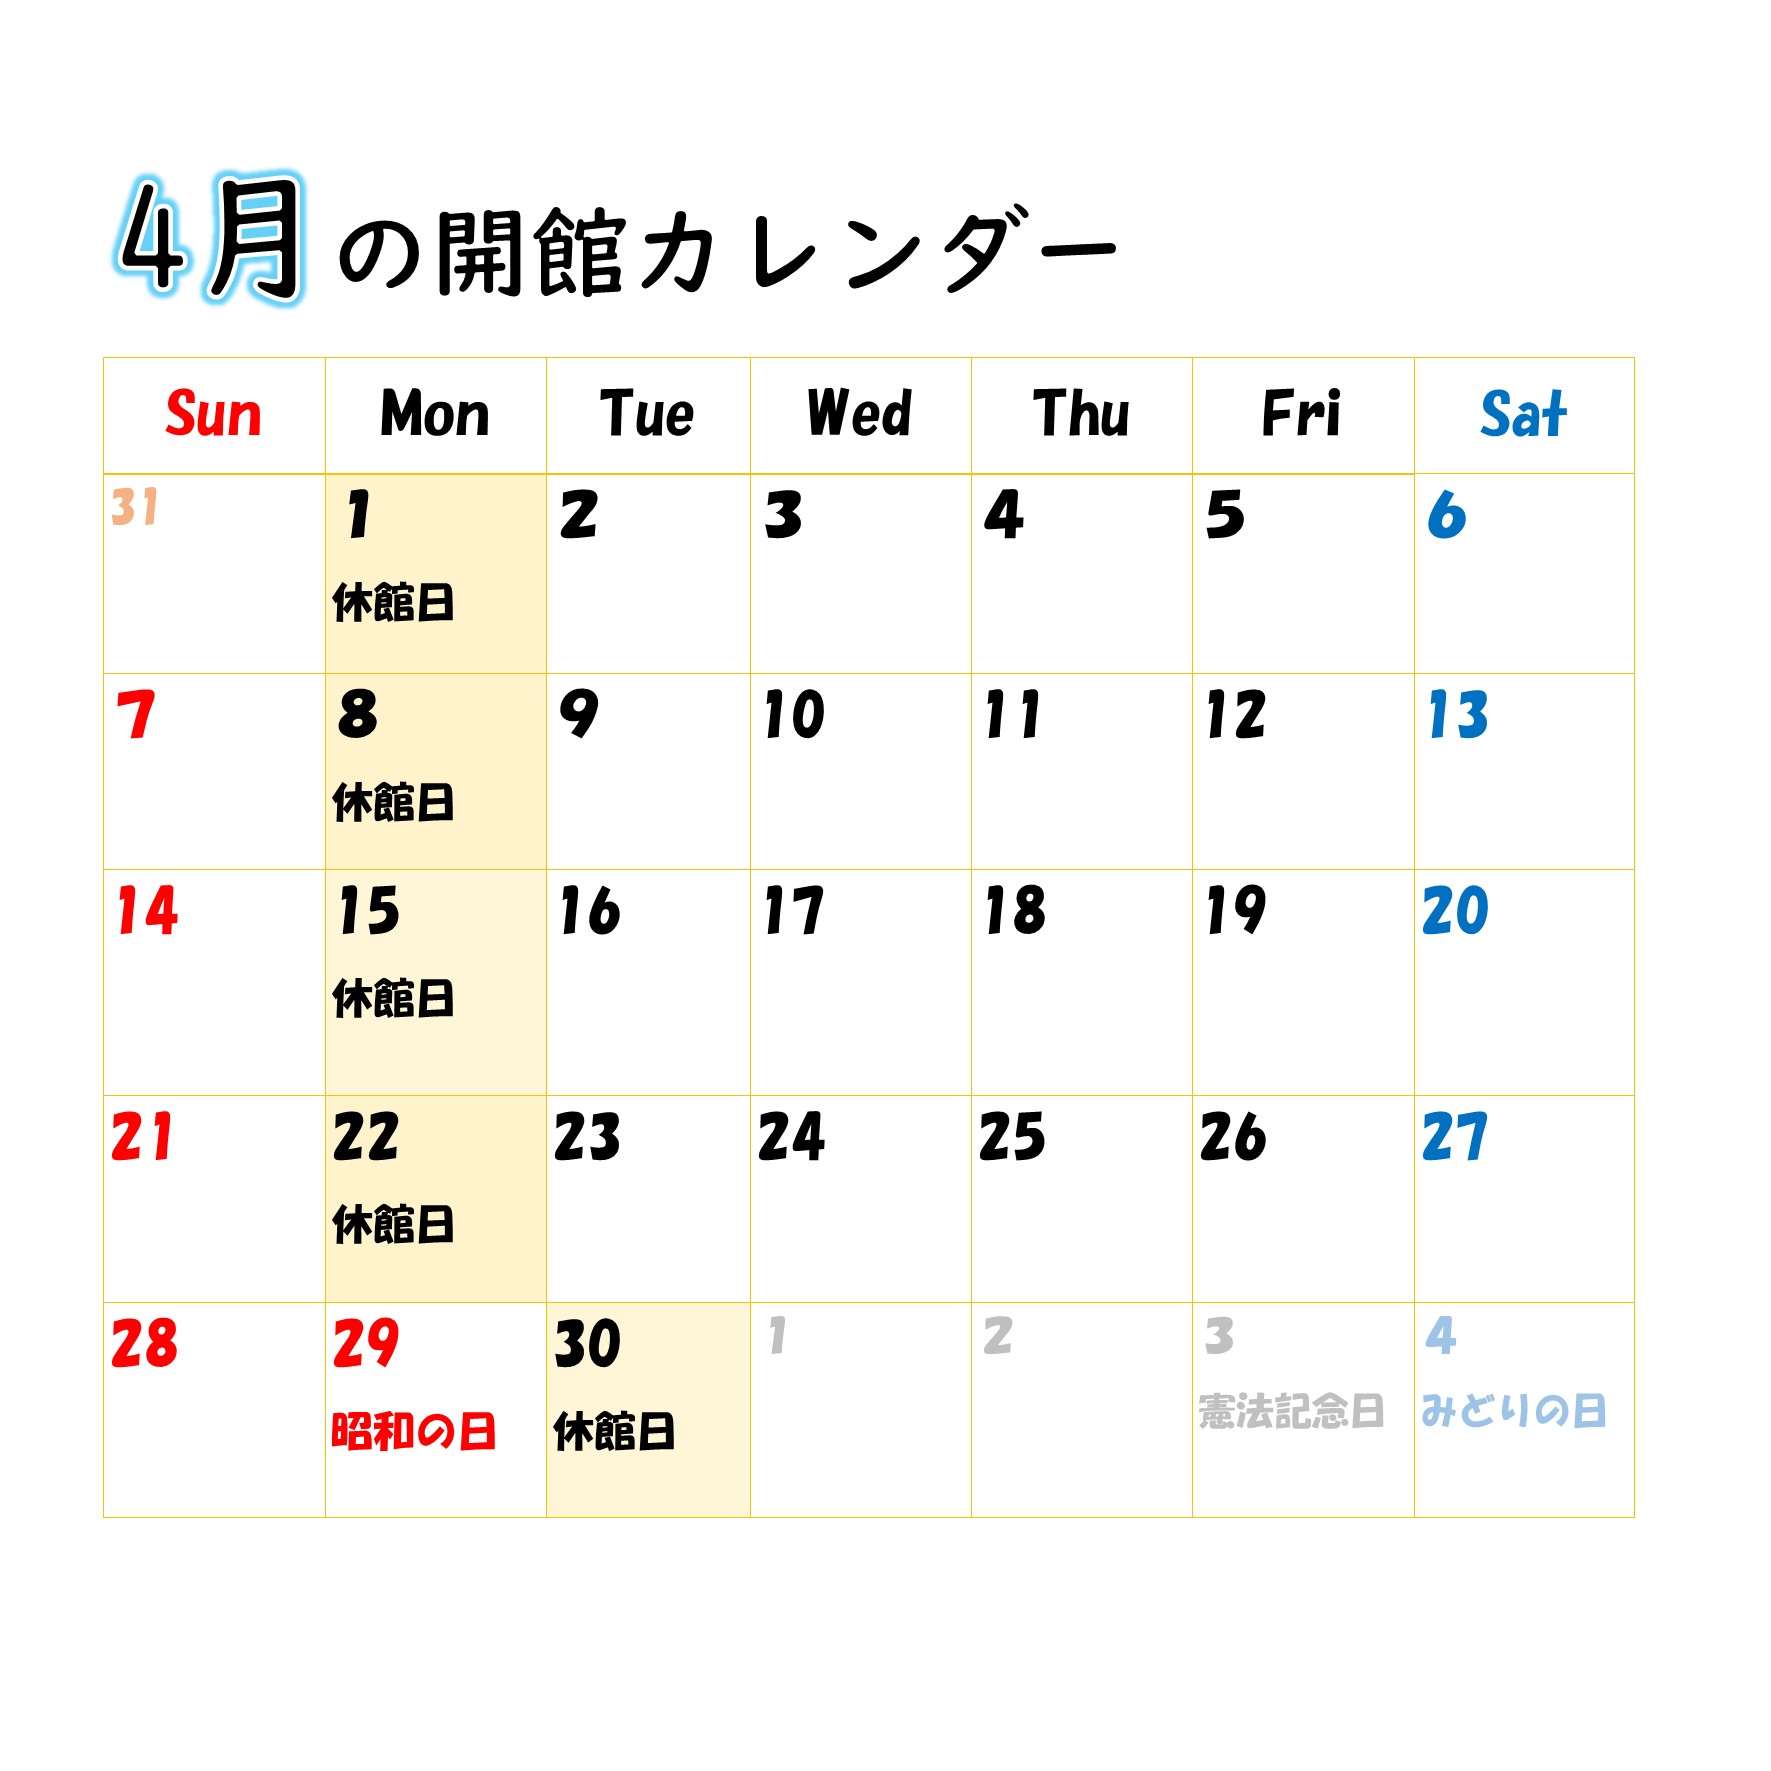 伊藤公資料館開館カレンダー（4月）